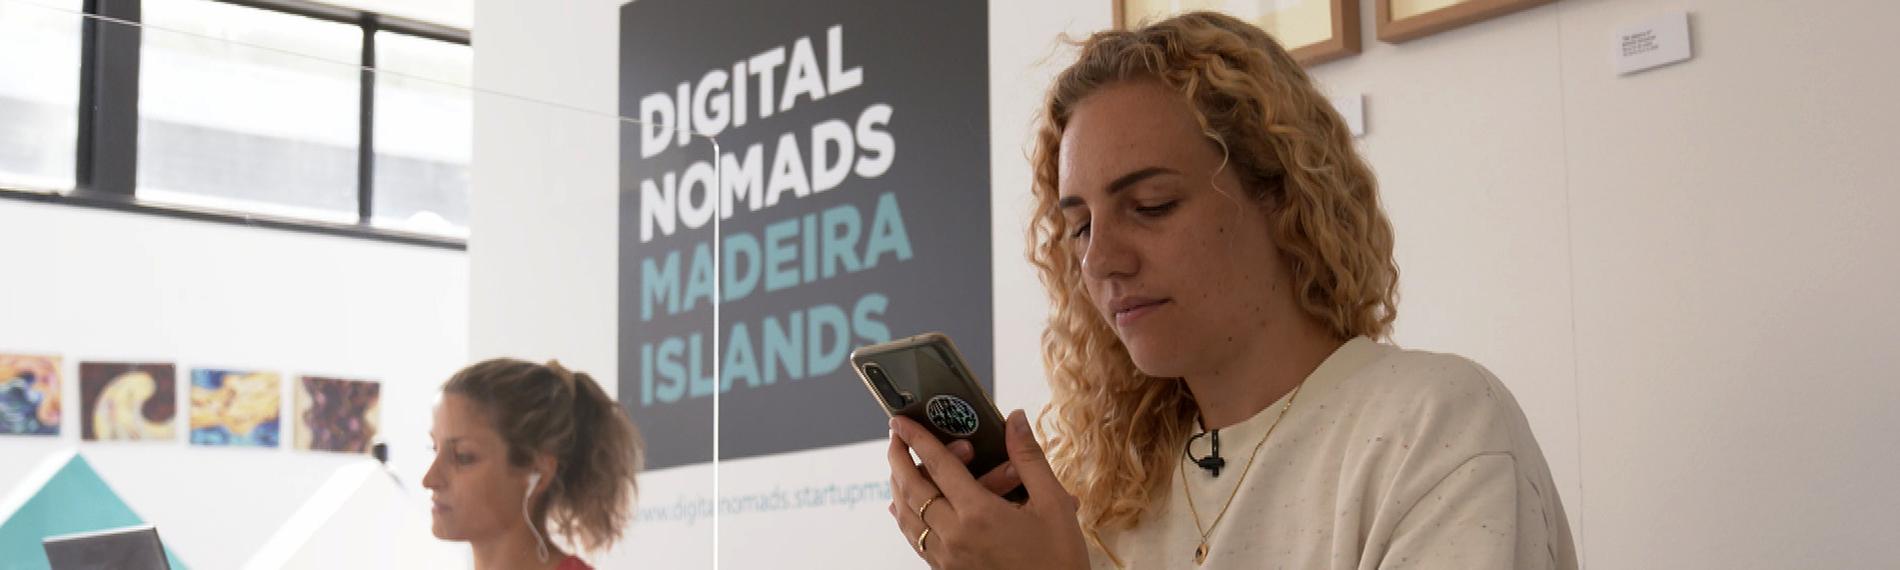 Zwei Frauen sitzen an einem Schreibtisch und arbeiten am Laptop. Die blonde Frau im Vordergrund, Merle Makobe, um die es geht, hält ein Handy in der Hand. Im Hintergrund auf der Wand steht geschrieben: Digital Nomads Madeira Islands. Übersetzung: Digitale Nomaden der Insel Madeira.